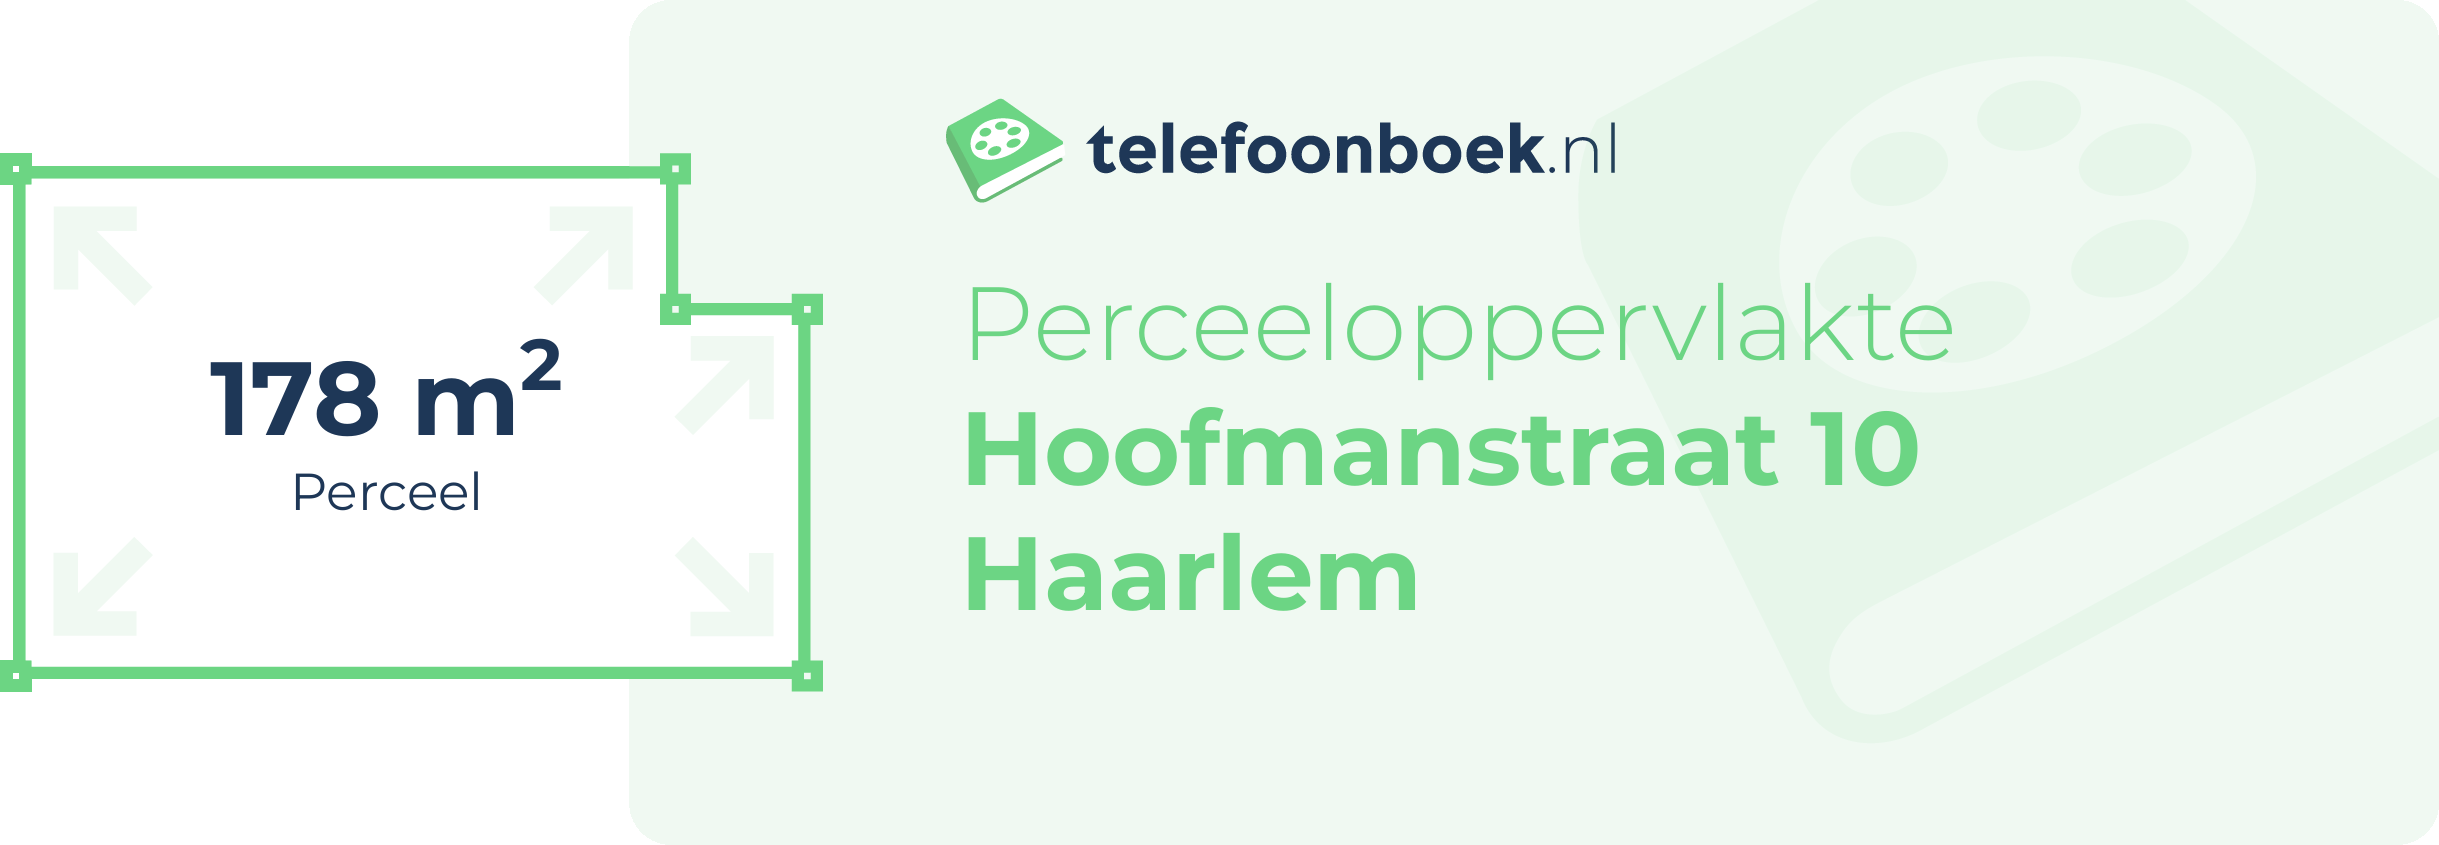 Perceeloppervlakte Hoofmanstraat 10 Haarlem